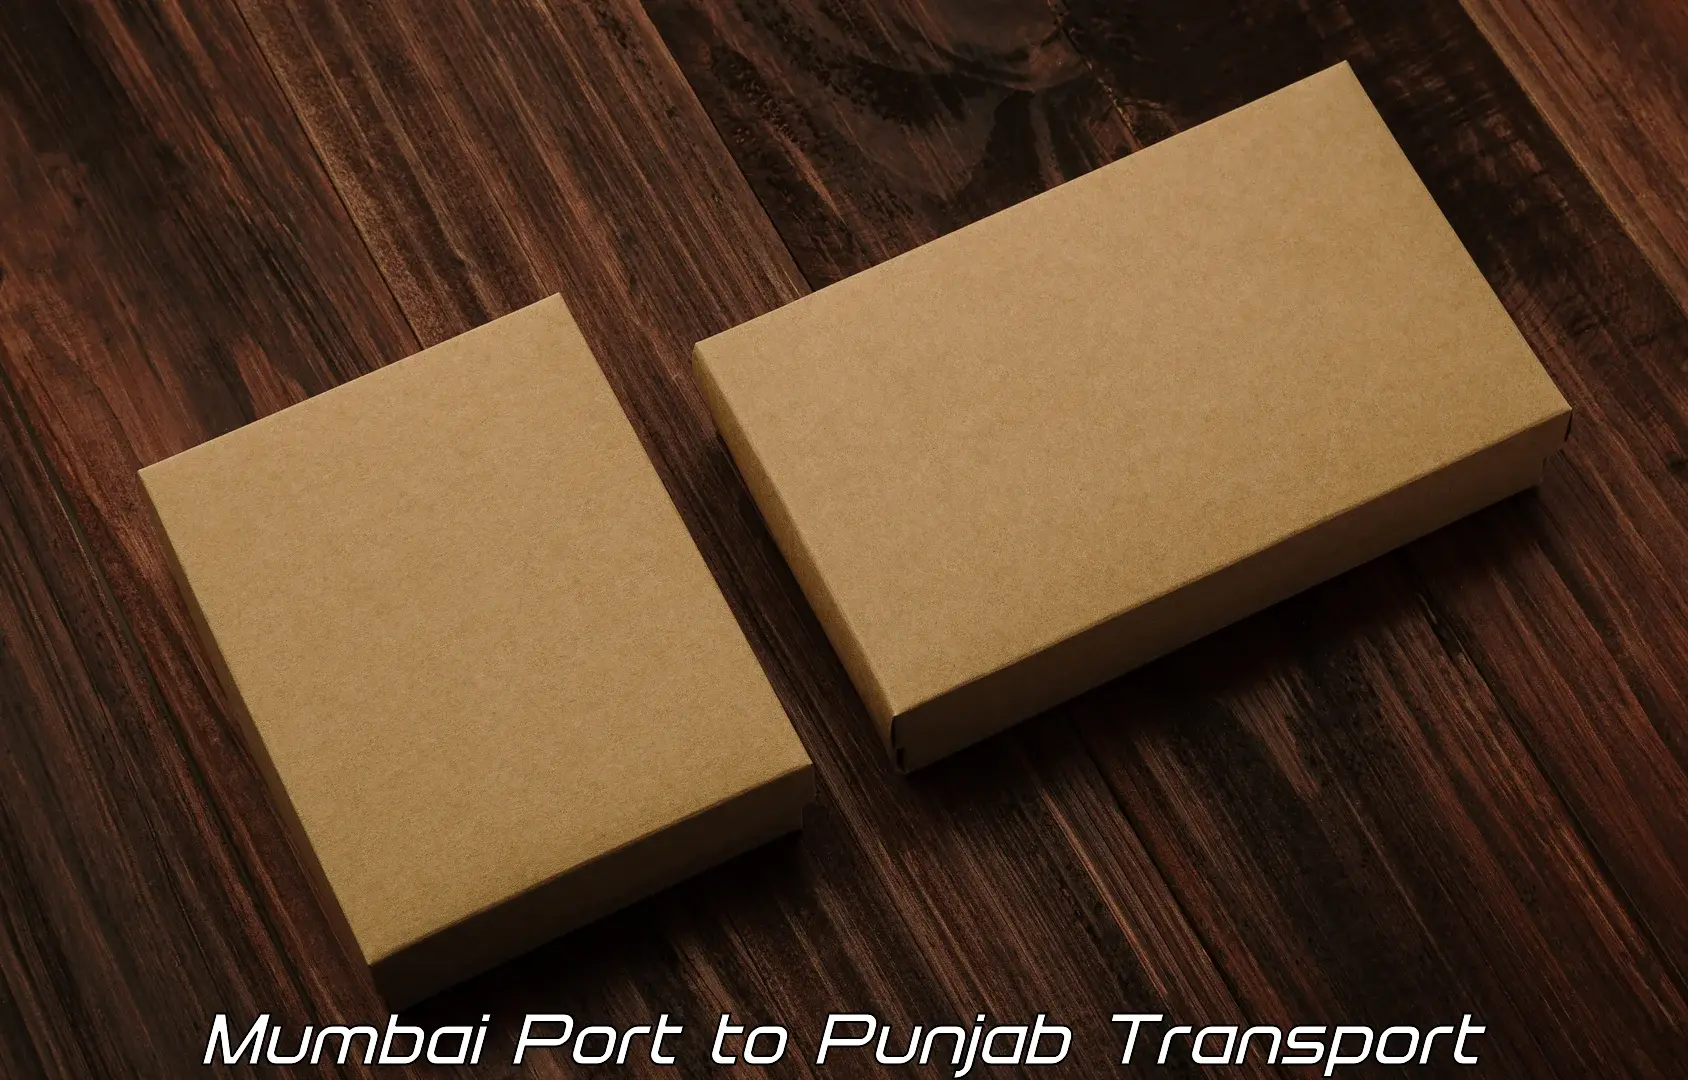 Transport in sharing Mumbai Port to Mukerian